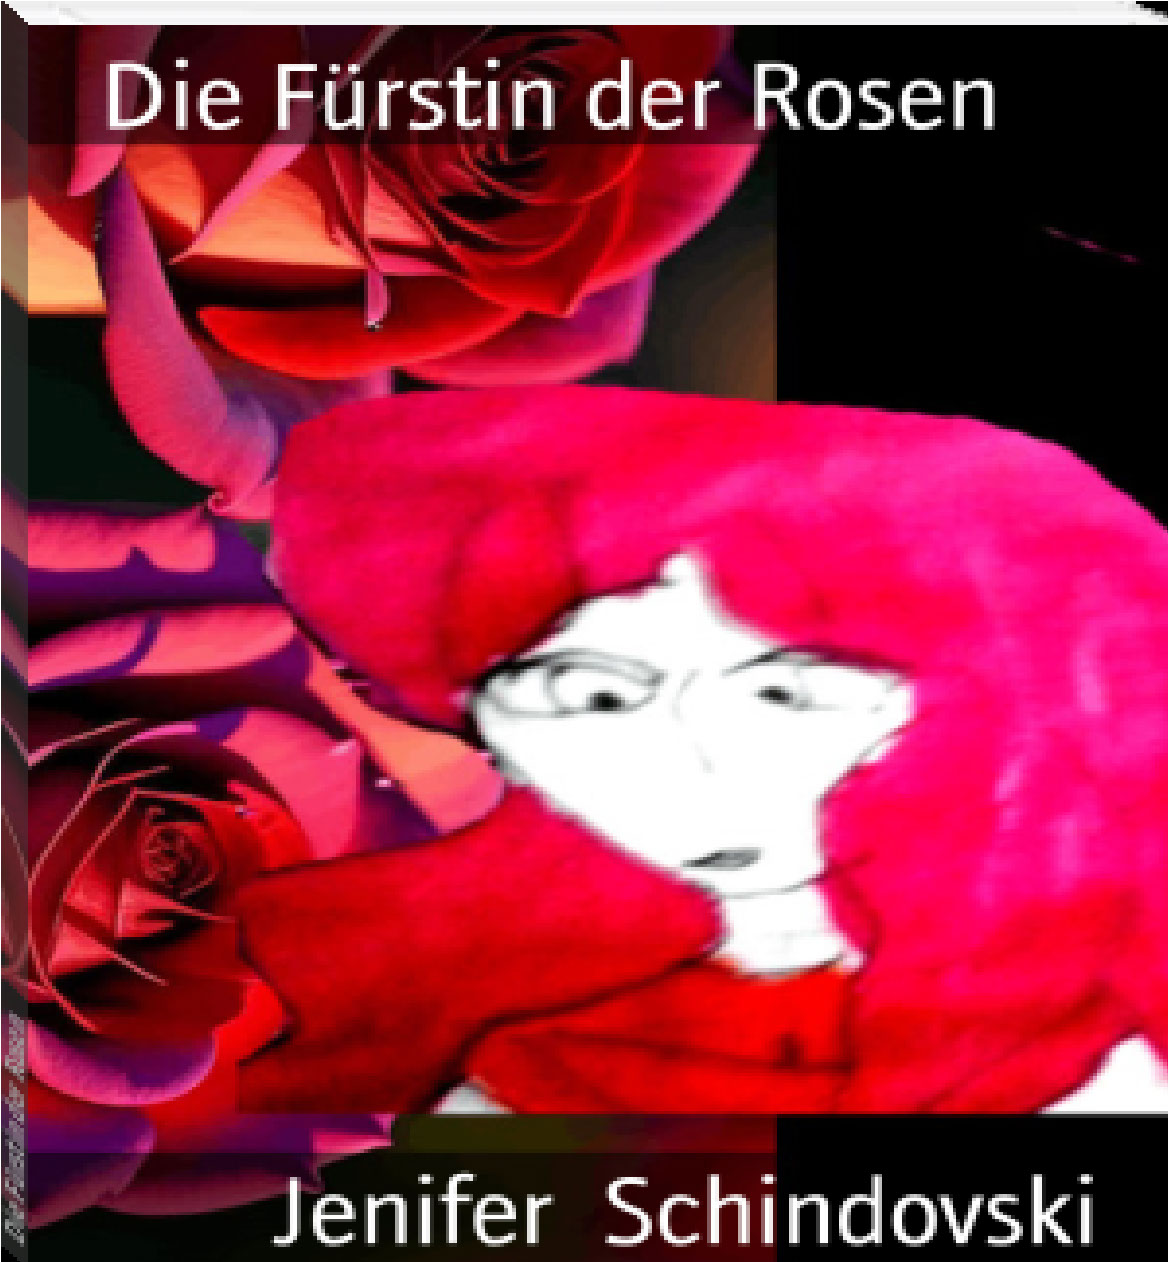 Die Fuerstin der Rosen rendition image